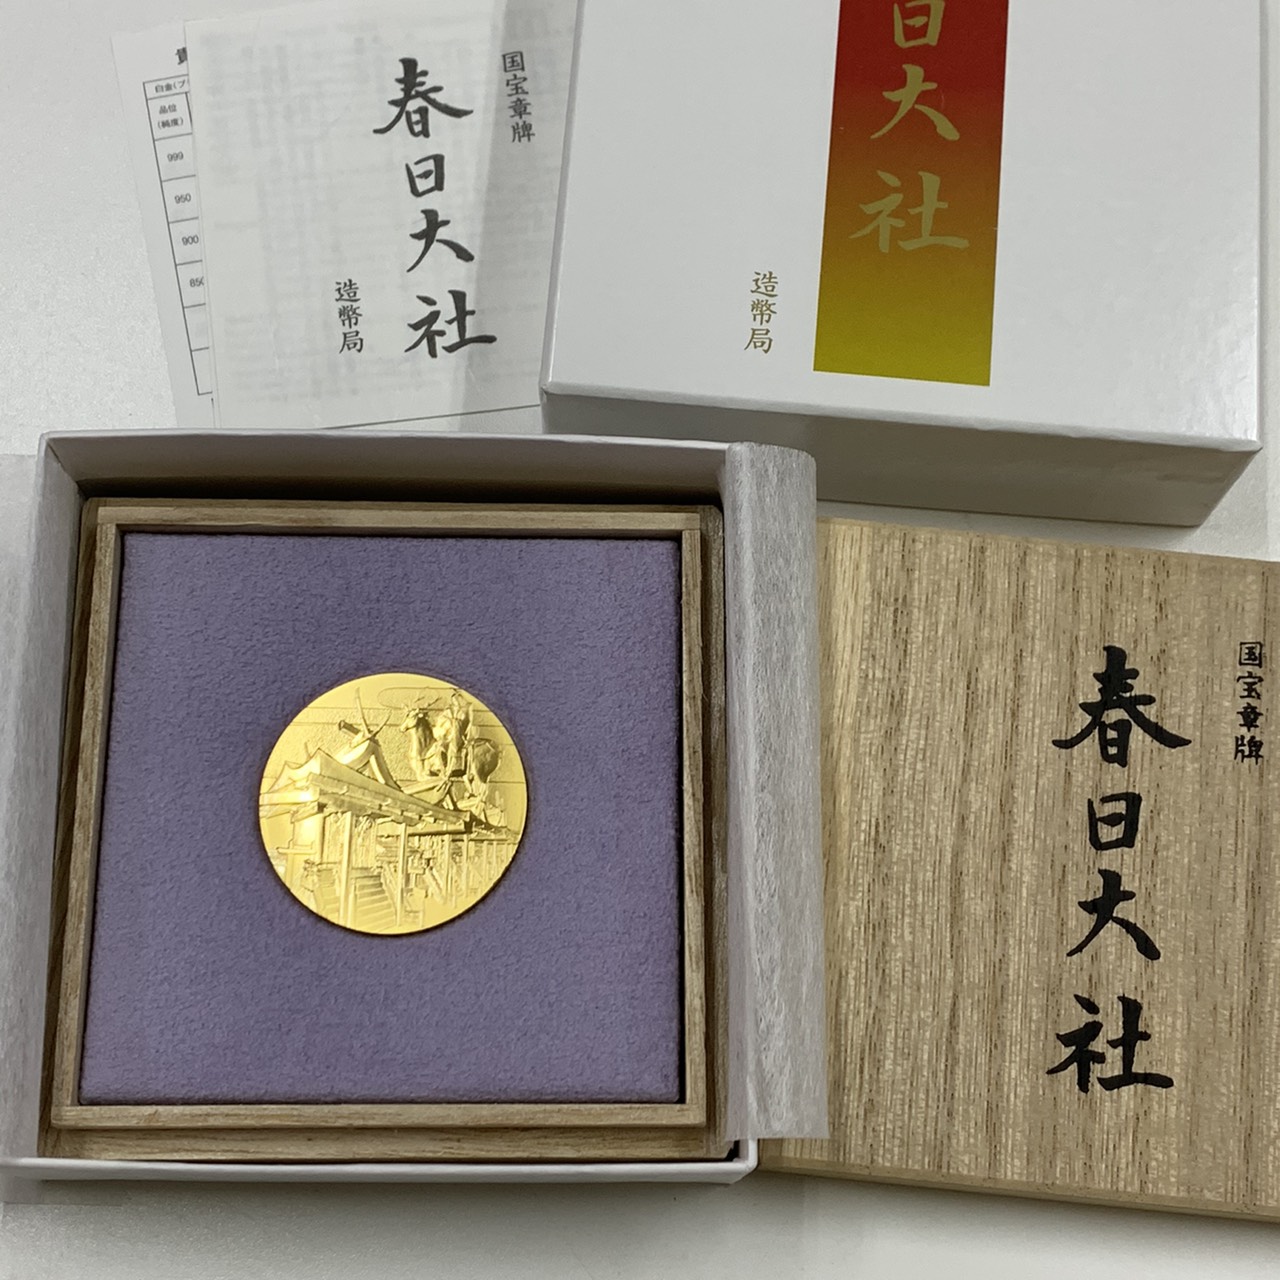 国宝章牌 春日大社 24金 記念メダル | 福岡の買取・質屋【蔵zou】博多 